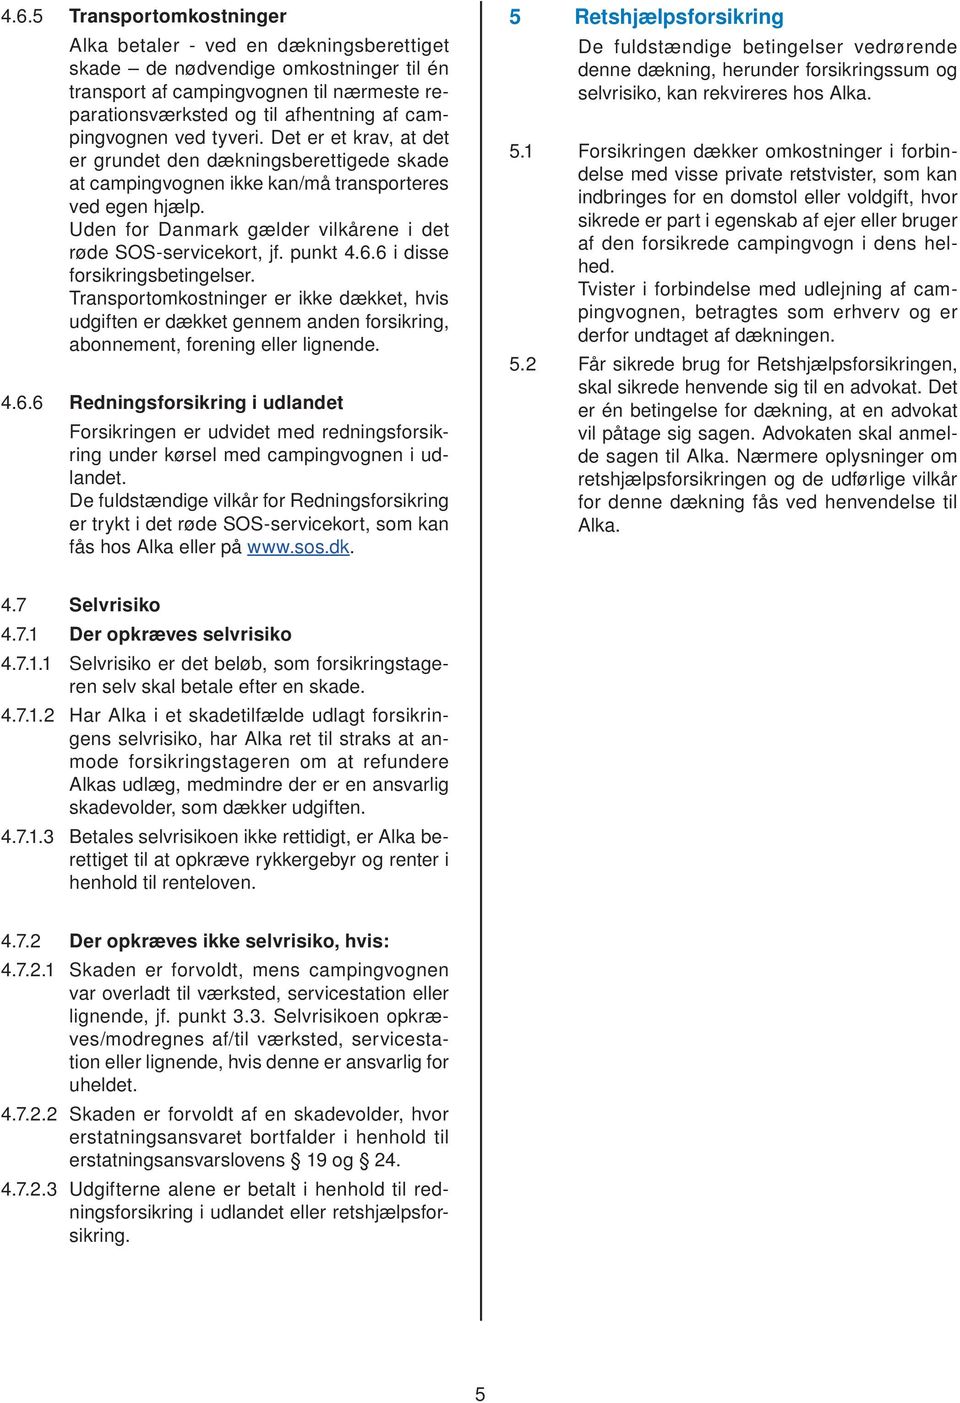 Uden for Danmark gælder vilkårene i det røde SOS-servicekort, jf. punkt 4.6.6 i disse forsikringsbetingelser.